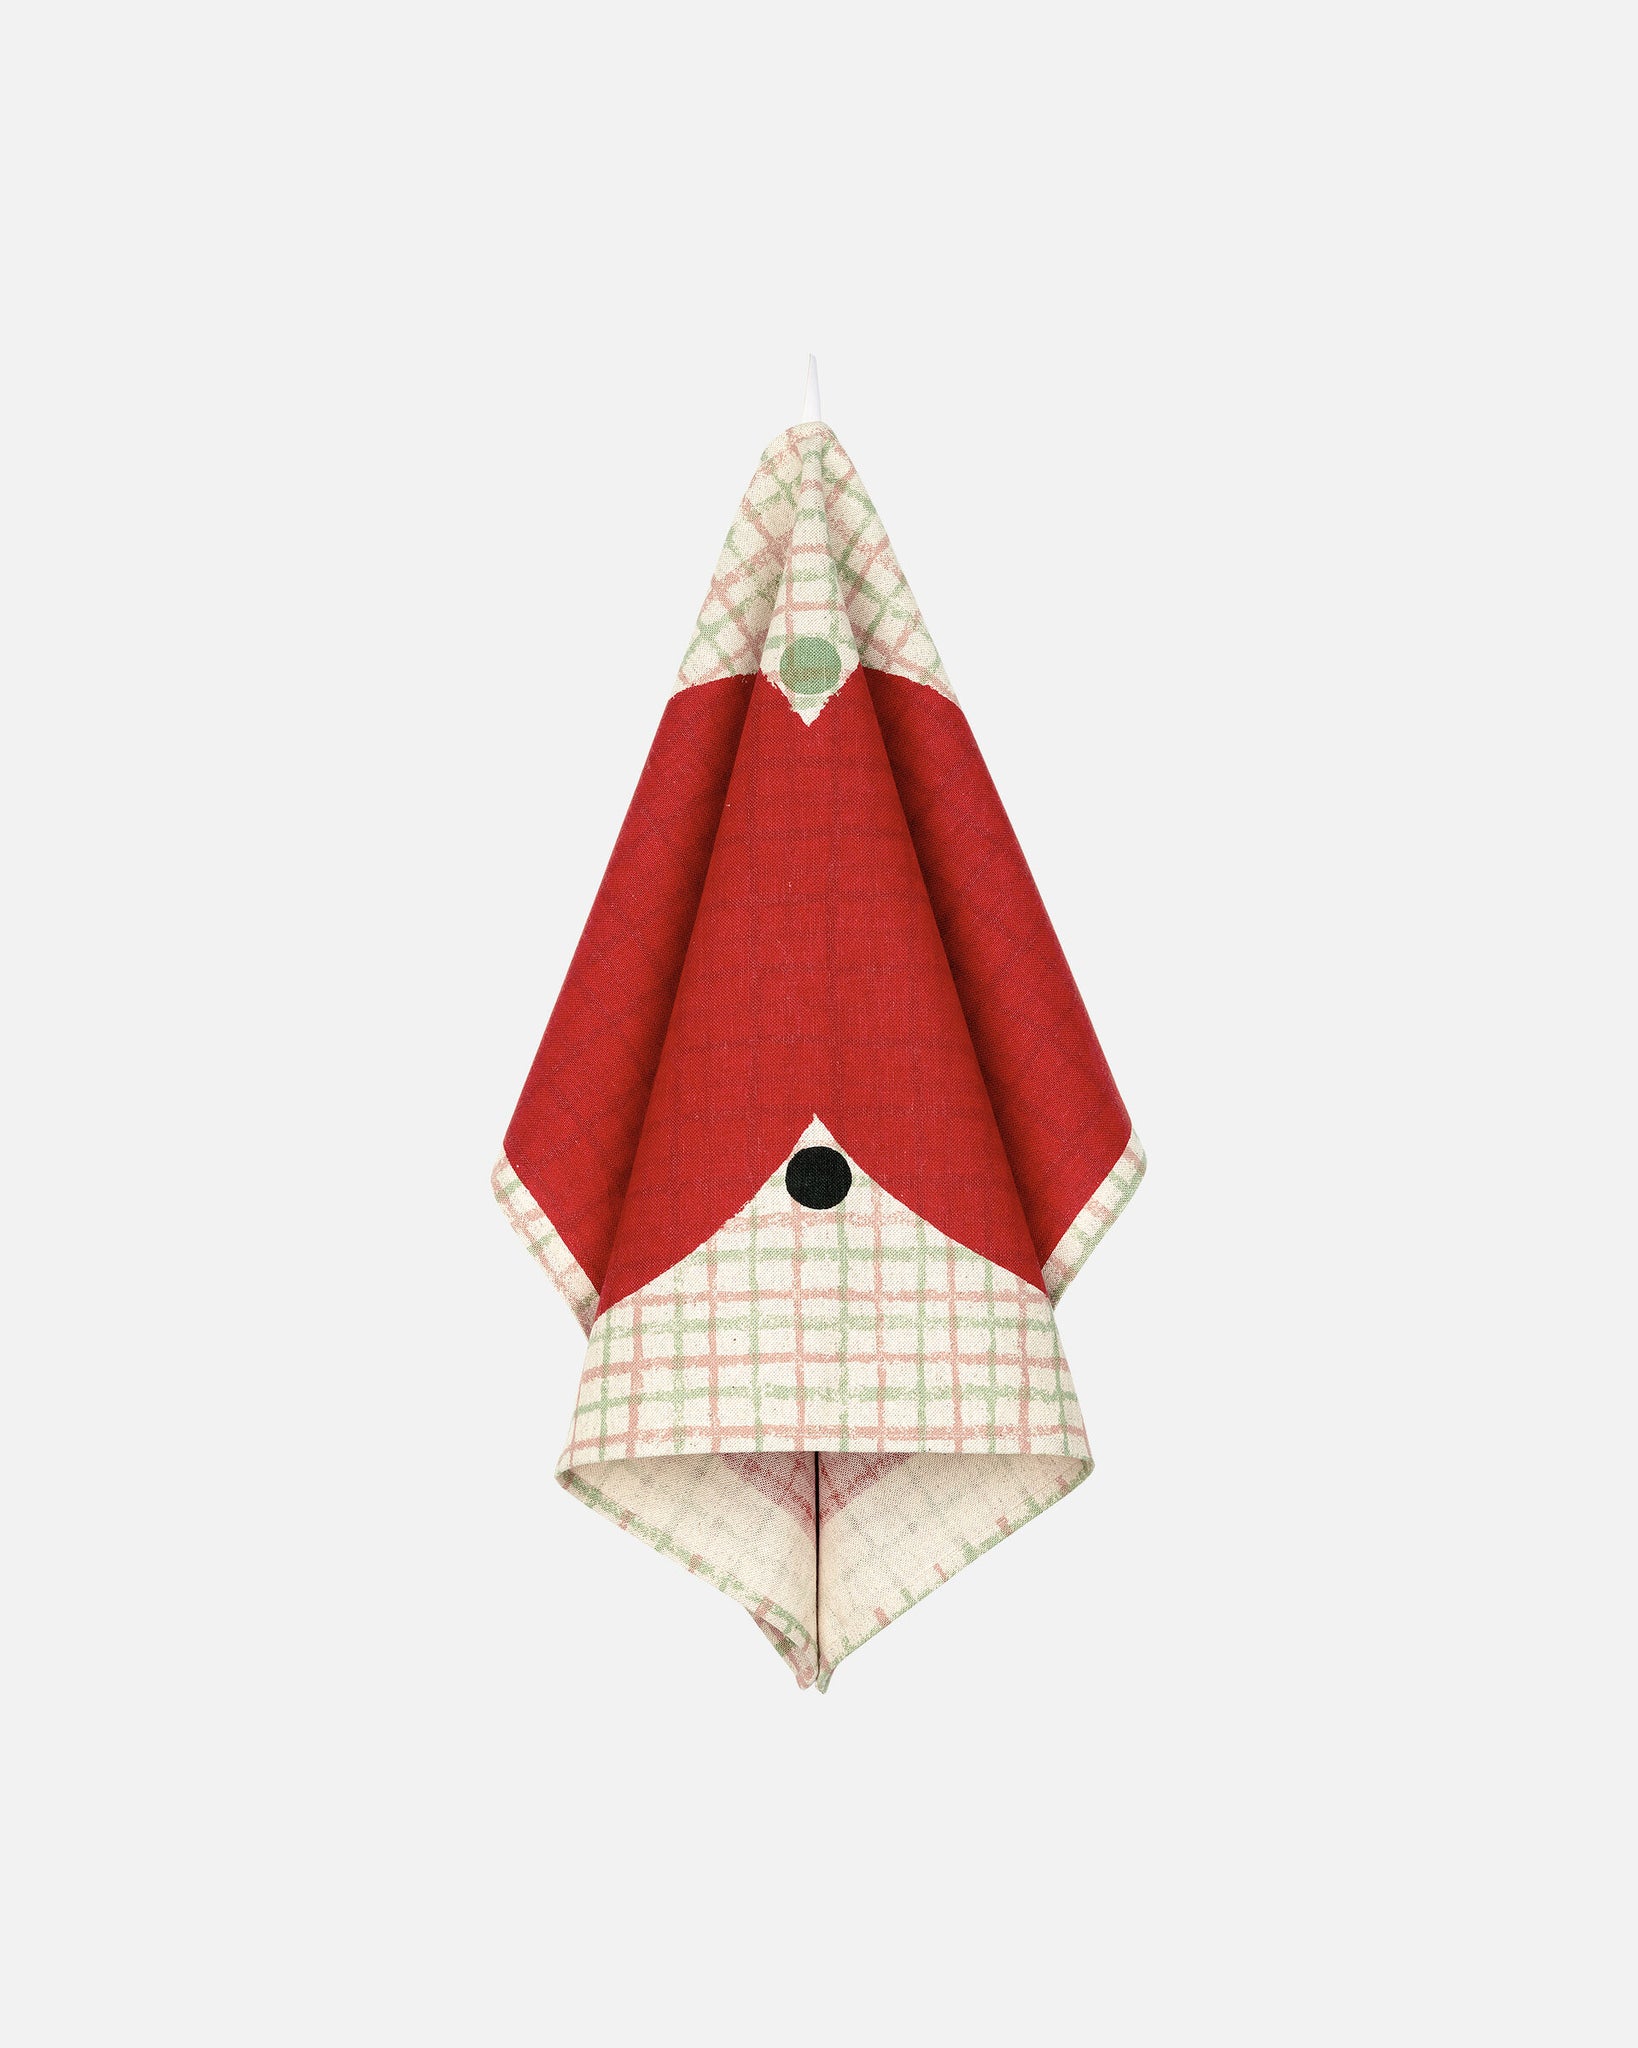 Marimekko Kalendi & Losange Kitchen Towel Set of 2 - Cotton, Red, Green